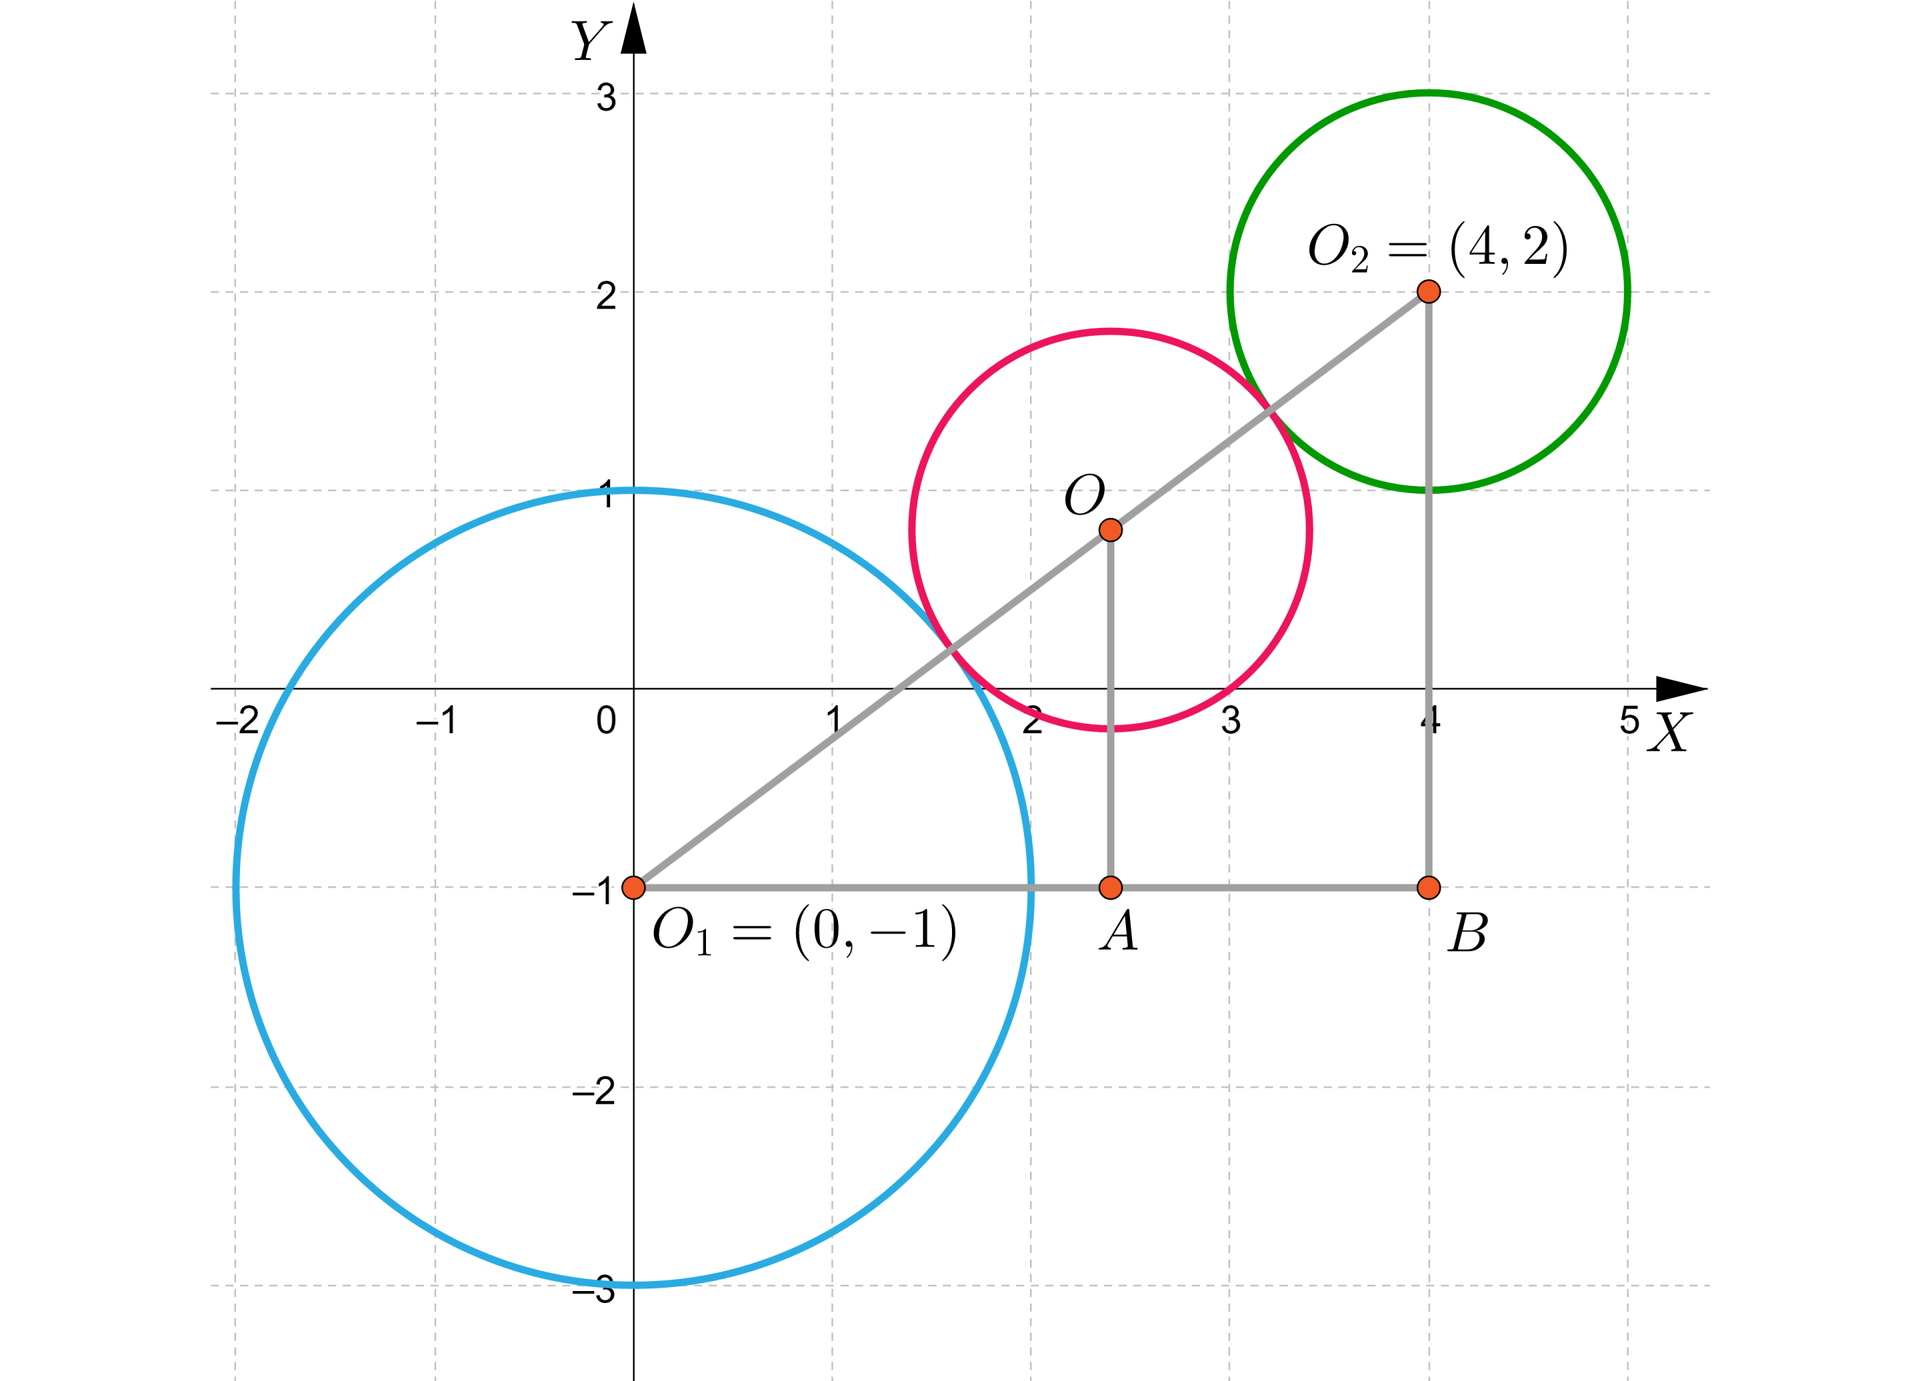 Ilustracja przedstawia układ współrzędnych z poziomą osią x od minus dwóch do pięciu i pionową osią y od minus trzech do trzech. Na płaszczyźnie znajdują się trzy okręgi. Pierwszy z nich ma środek O1 w punkcie początek nawiasu, 0, minus 1, zamknięcie nawiasu, jego promień ma długość dwa. Drugi okrąg ma środek w punkcie O, okrąg ten znajduje się pomiędzy pierwszym a trzecim okręgiem. Trzeci okrąg ma środek O2 w punkcie początek nawiasu, 4, minus 2, zamknięcie nawiasu, a jego promień ma długość jeden. W punktu math&gt;O1 poprowadzono poziomy odcinek przechodzący przez punkt A, aż do punktu B. Przy czym punkt A jest to punkt znajdujący się bezpośrednio pod środkiem drugiego okręgu i jest on połączony z tym punktem tworząc pionowy odcinek OA. Punkt B ma współrzędne początek nawiasu, 4, minus 1, zamknięcie nawiasu i jest połączony ze środkiem trzeciego okręgu tworząc pionowy odcinek math&gt;O2B. 